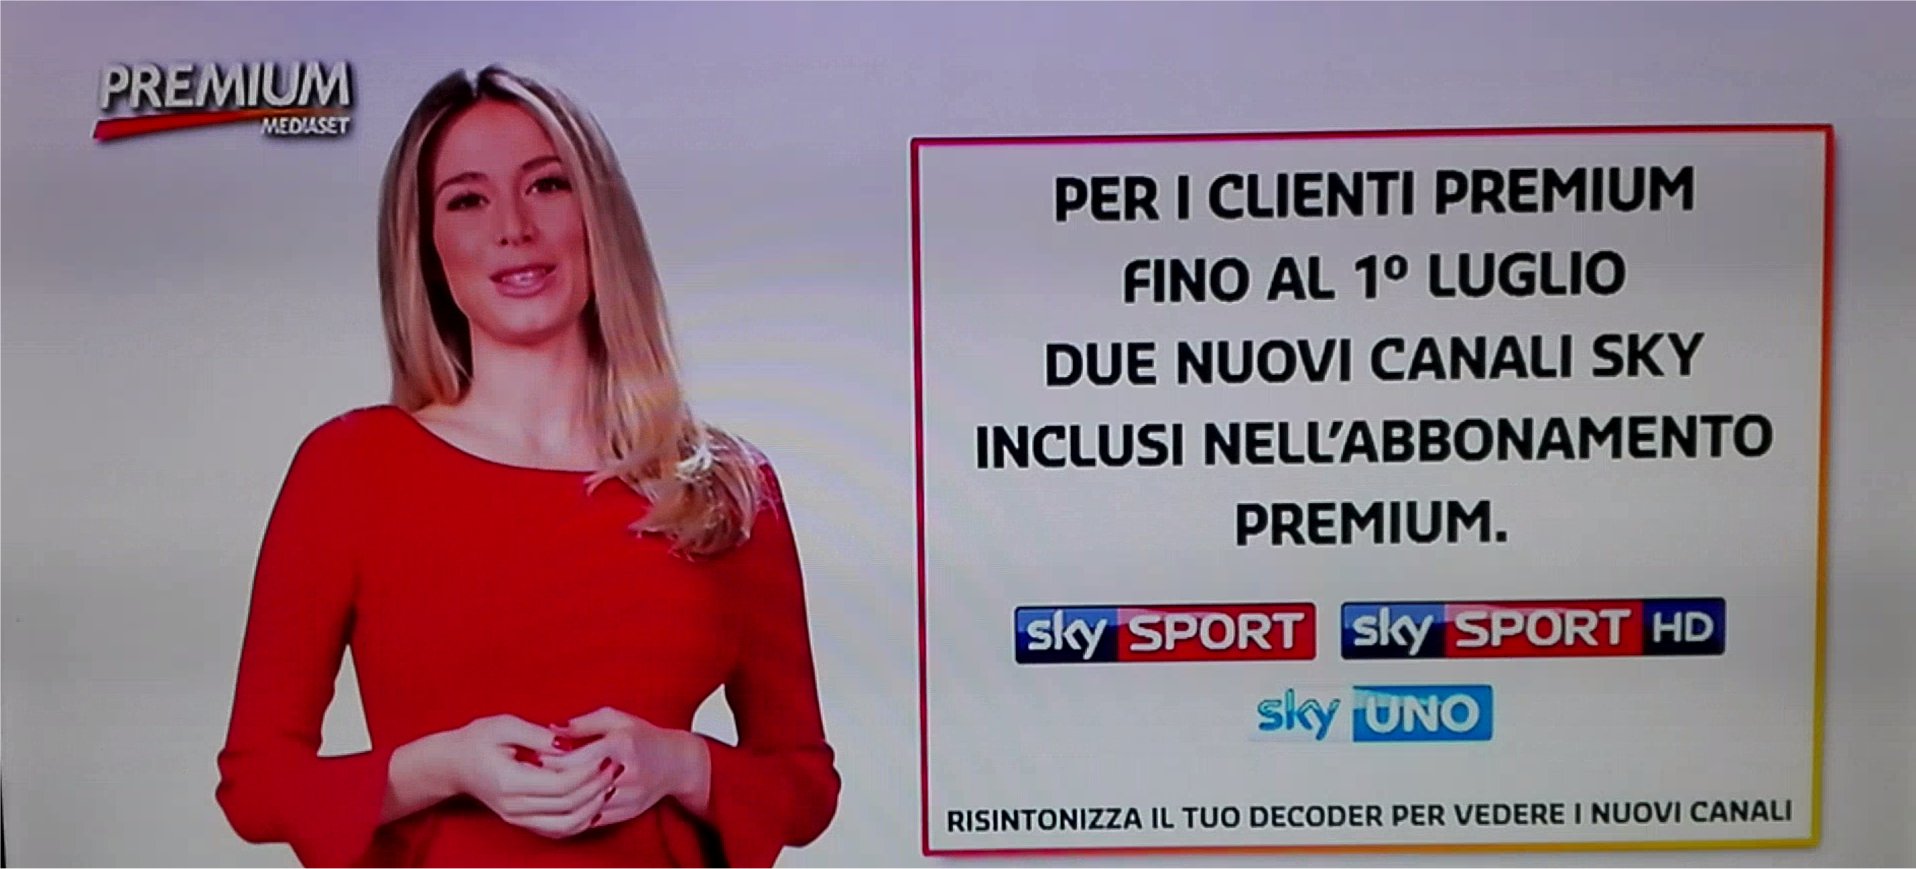 Come attivare la visione integrale del canale Sky Sport su Mediaset Premium